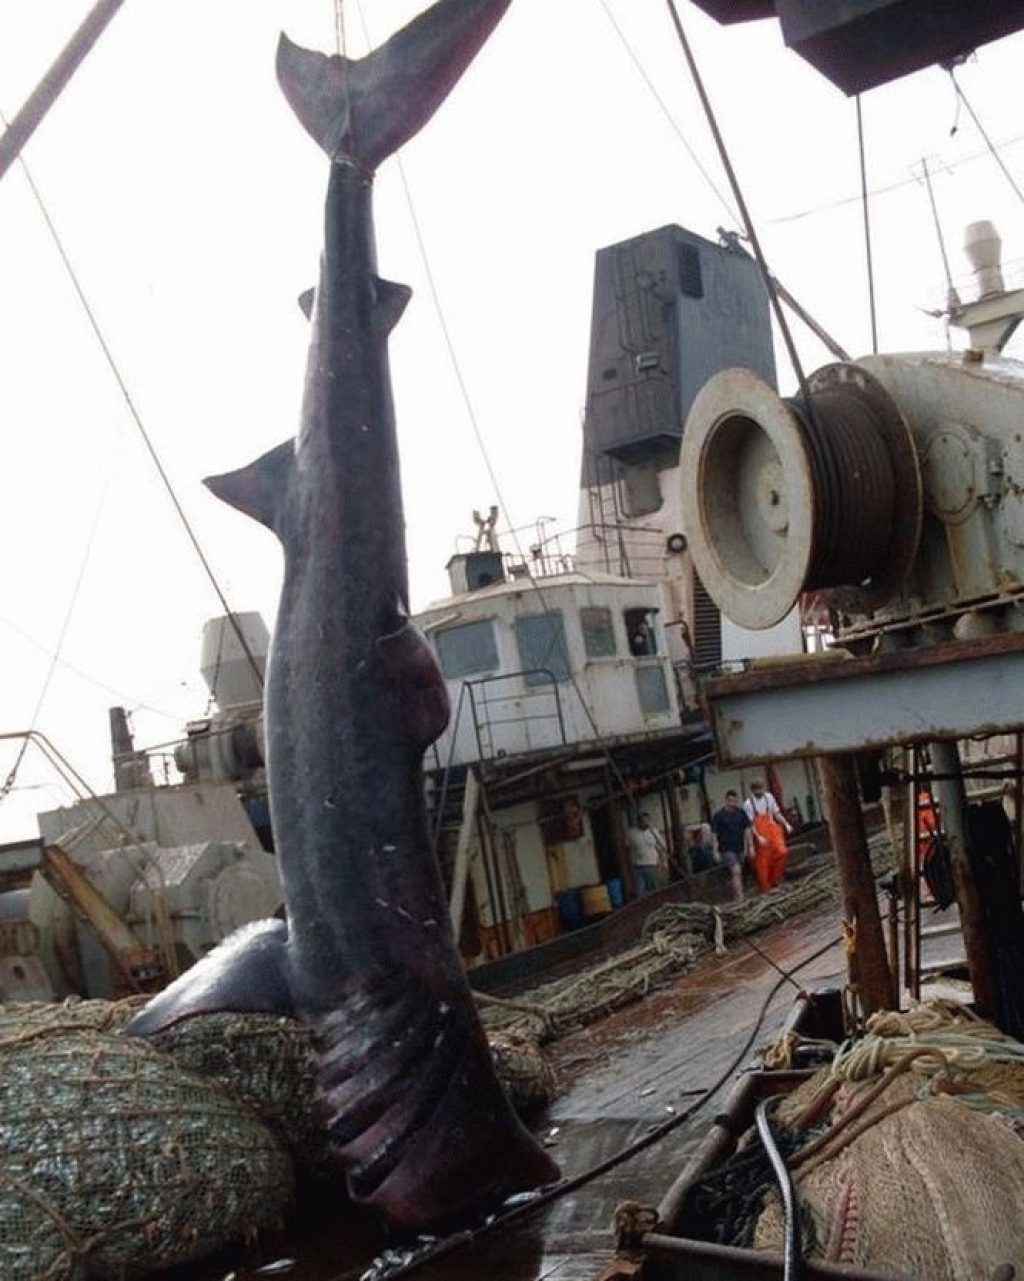 Эти рыбаки разгружали сети, когда увидели нечто ужасное… Этот улов они не забудут никогда!